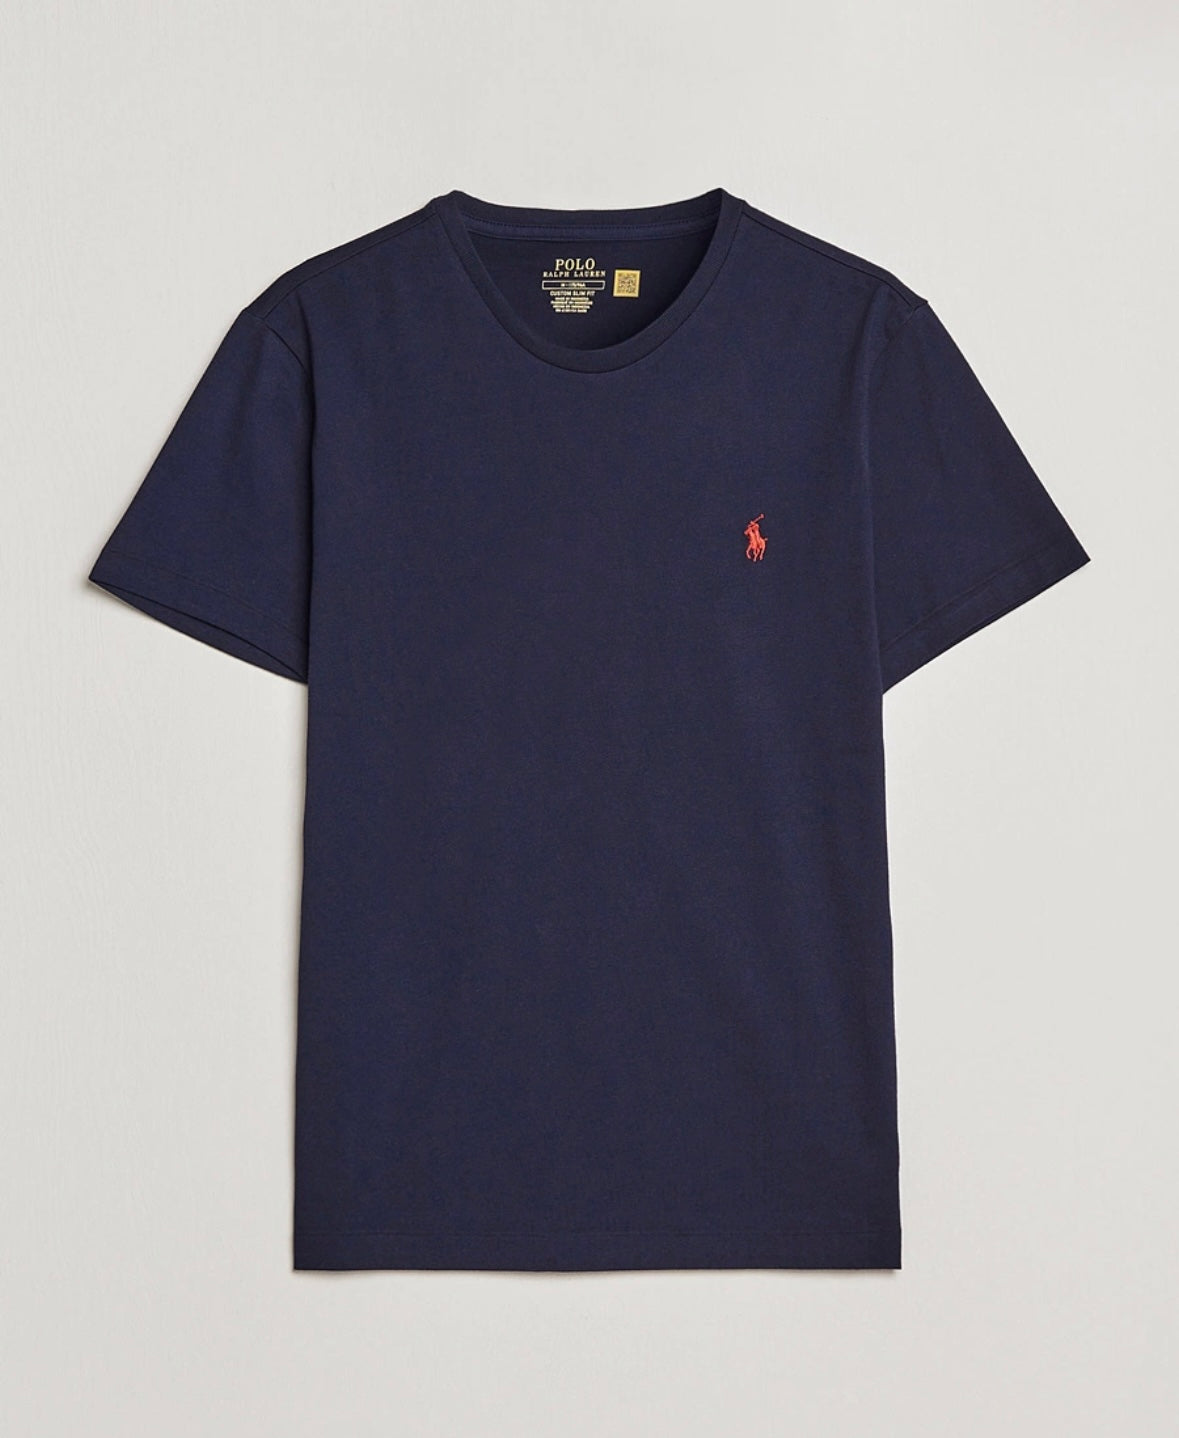 Polo Ralph Lauren t-shirt - Navy